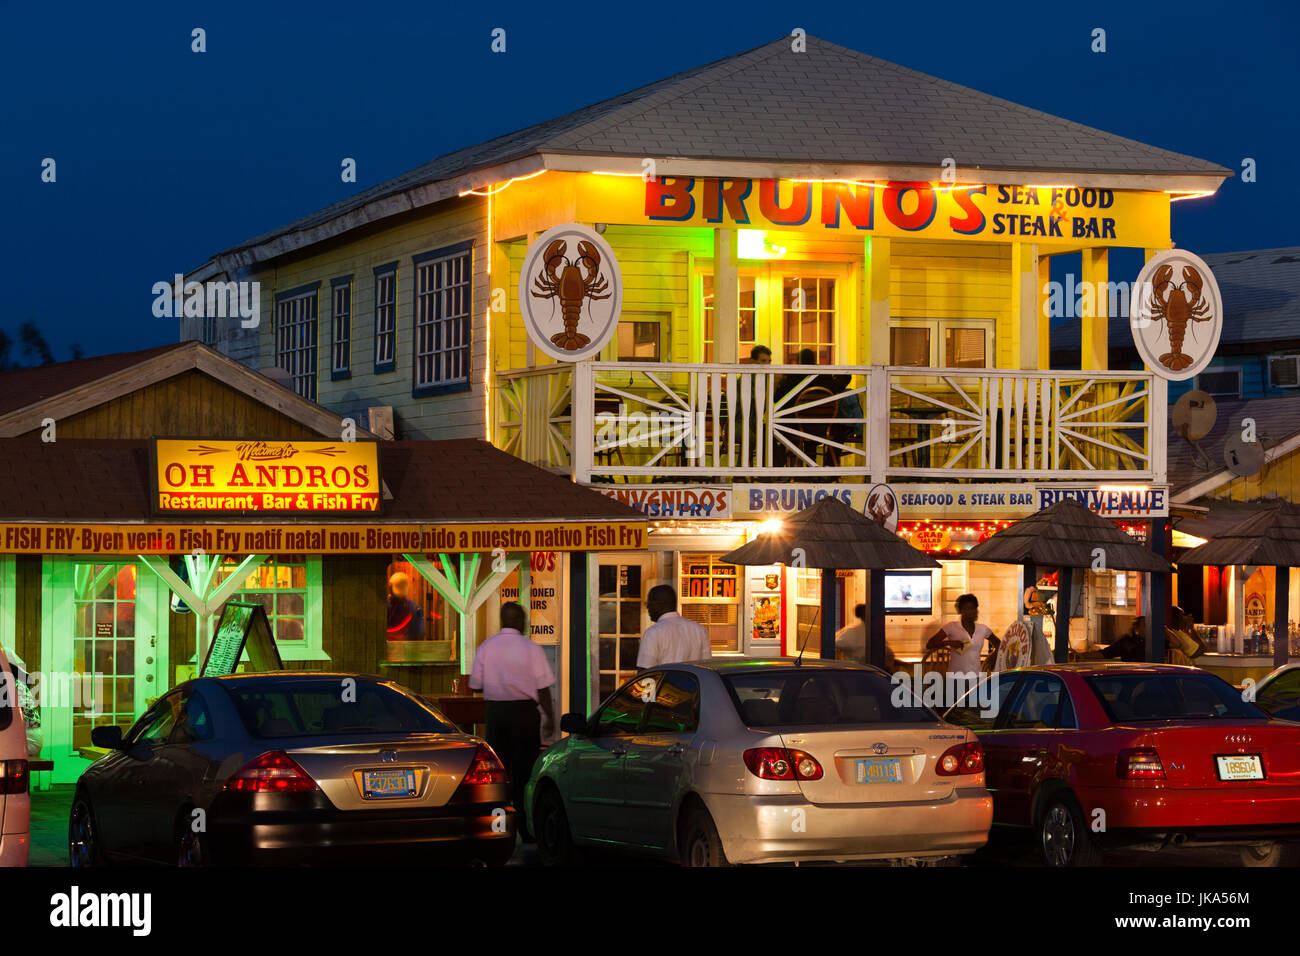 Bahamas, New Providence Island, Nassau, Arawak Cay, fish fry restaurants, signs, dusk Stock Photo